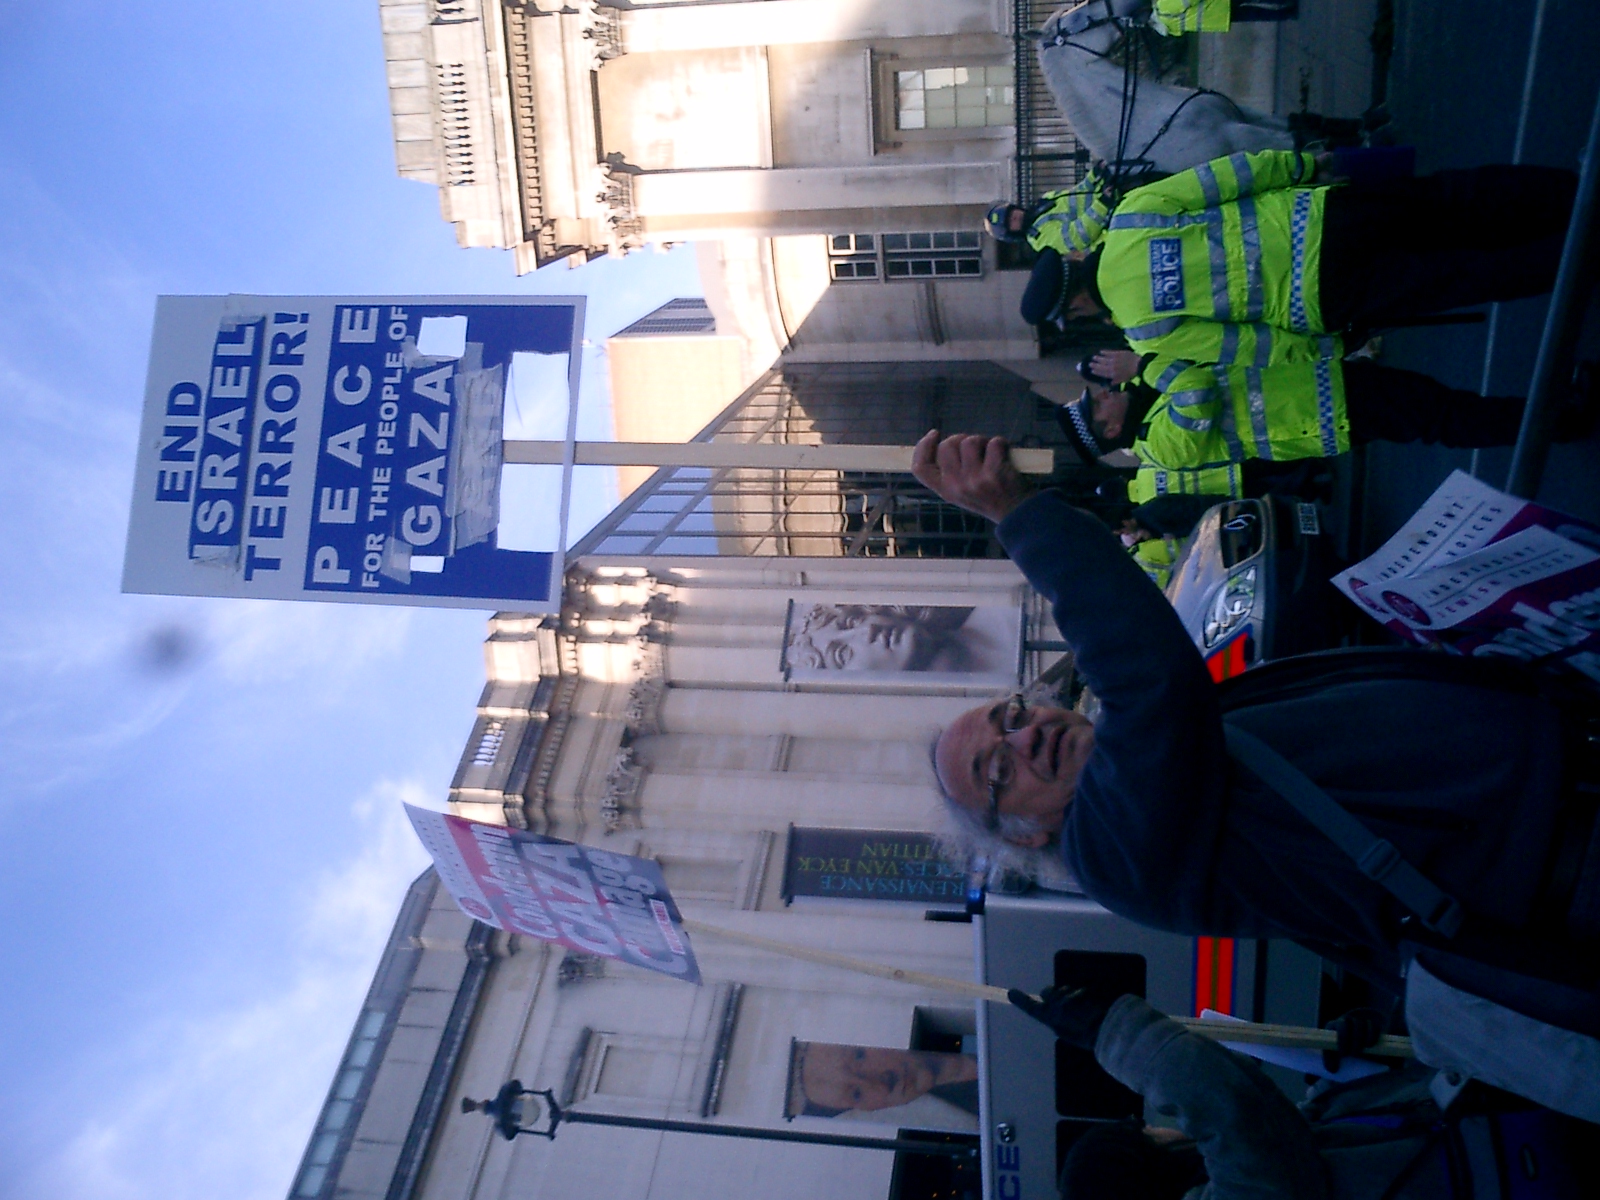 Counter-protest, Trafalgar Square, 11 Jan 09 - Picture 3